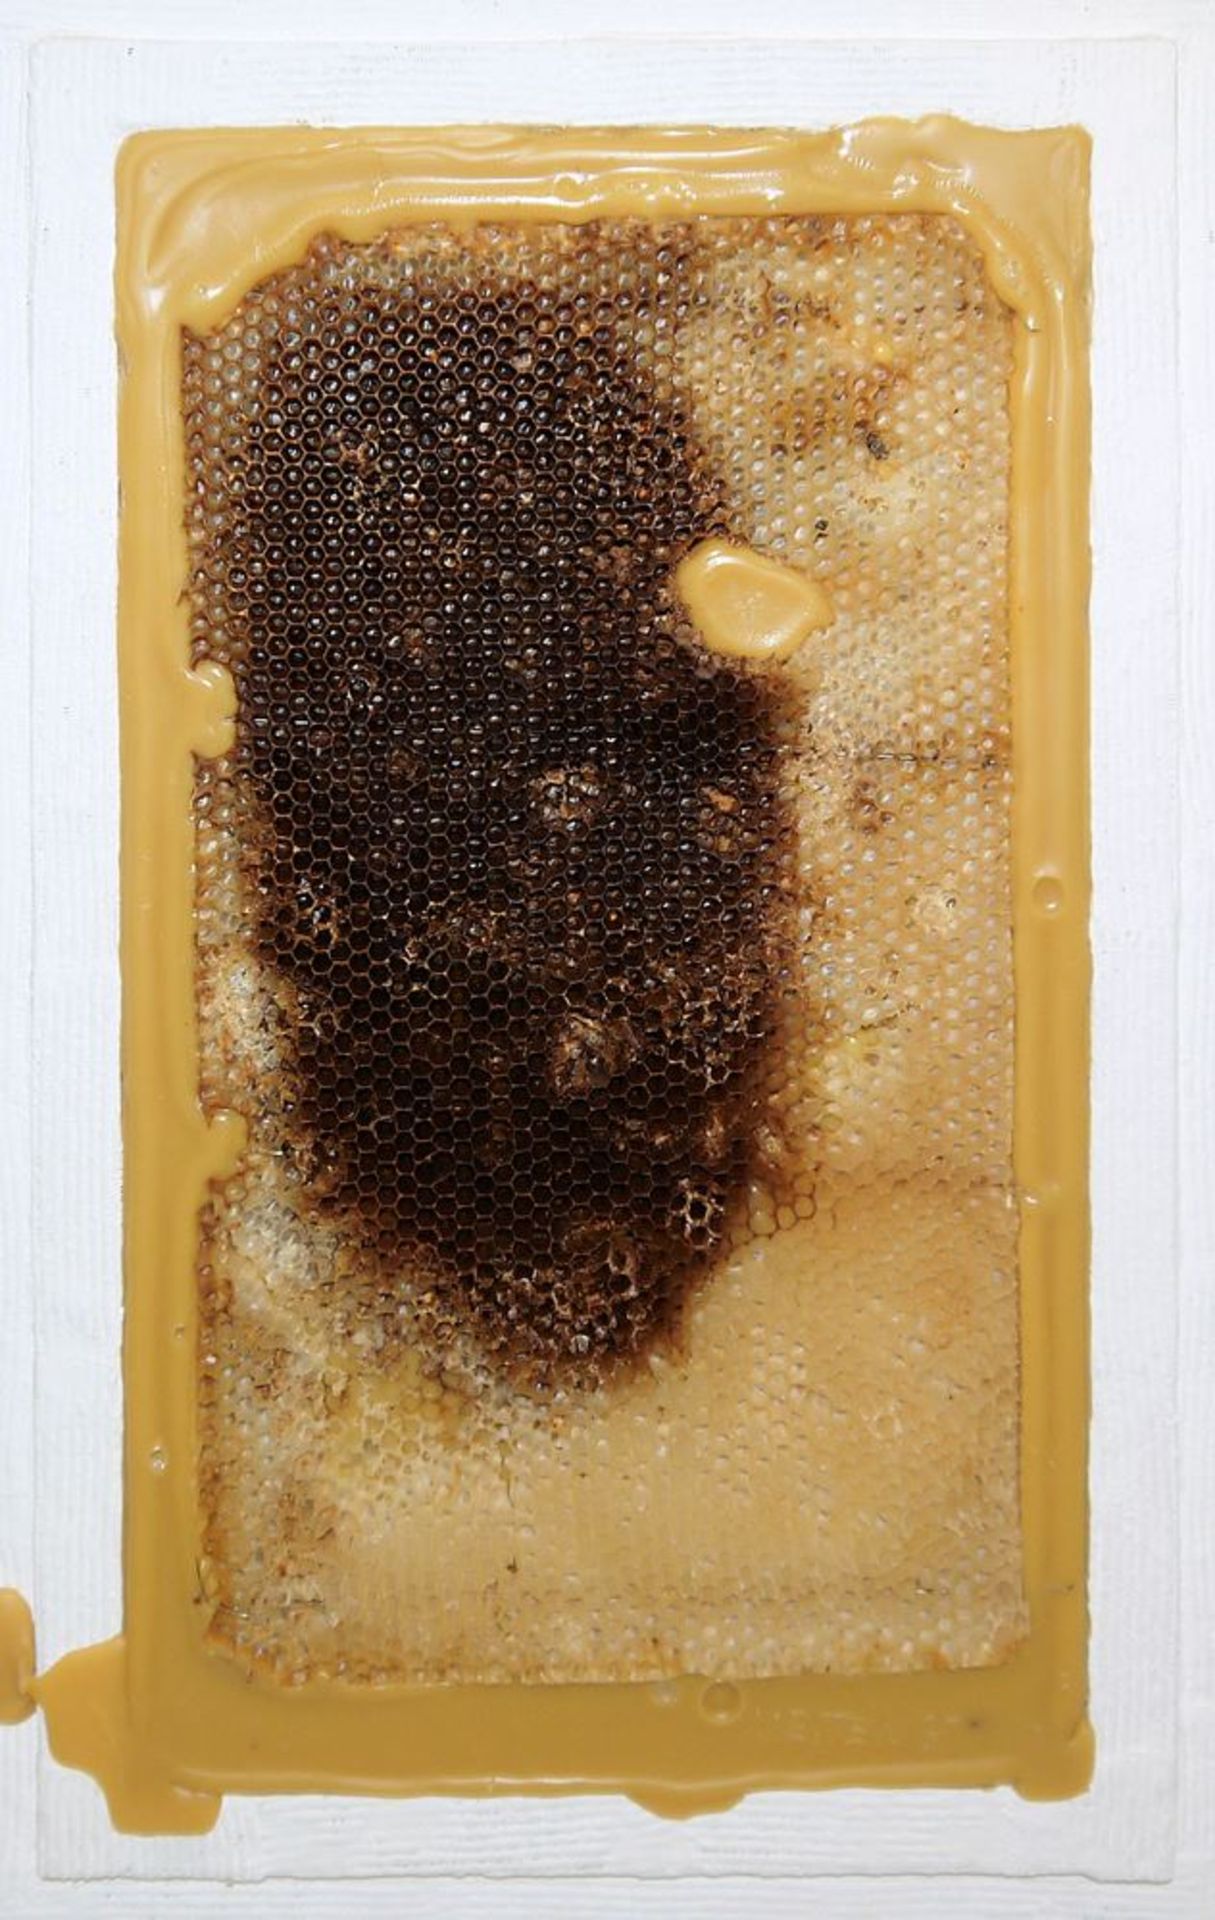 Johannes Metten, "Mutationen in Wachs", 2 signierte Wachs-Reliefs mit Bienenwaben von 1997 - Image 2 of 6